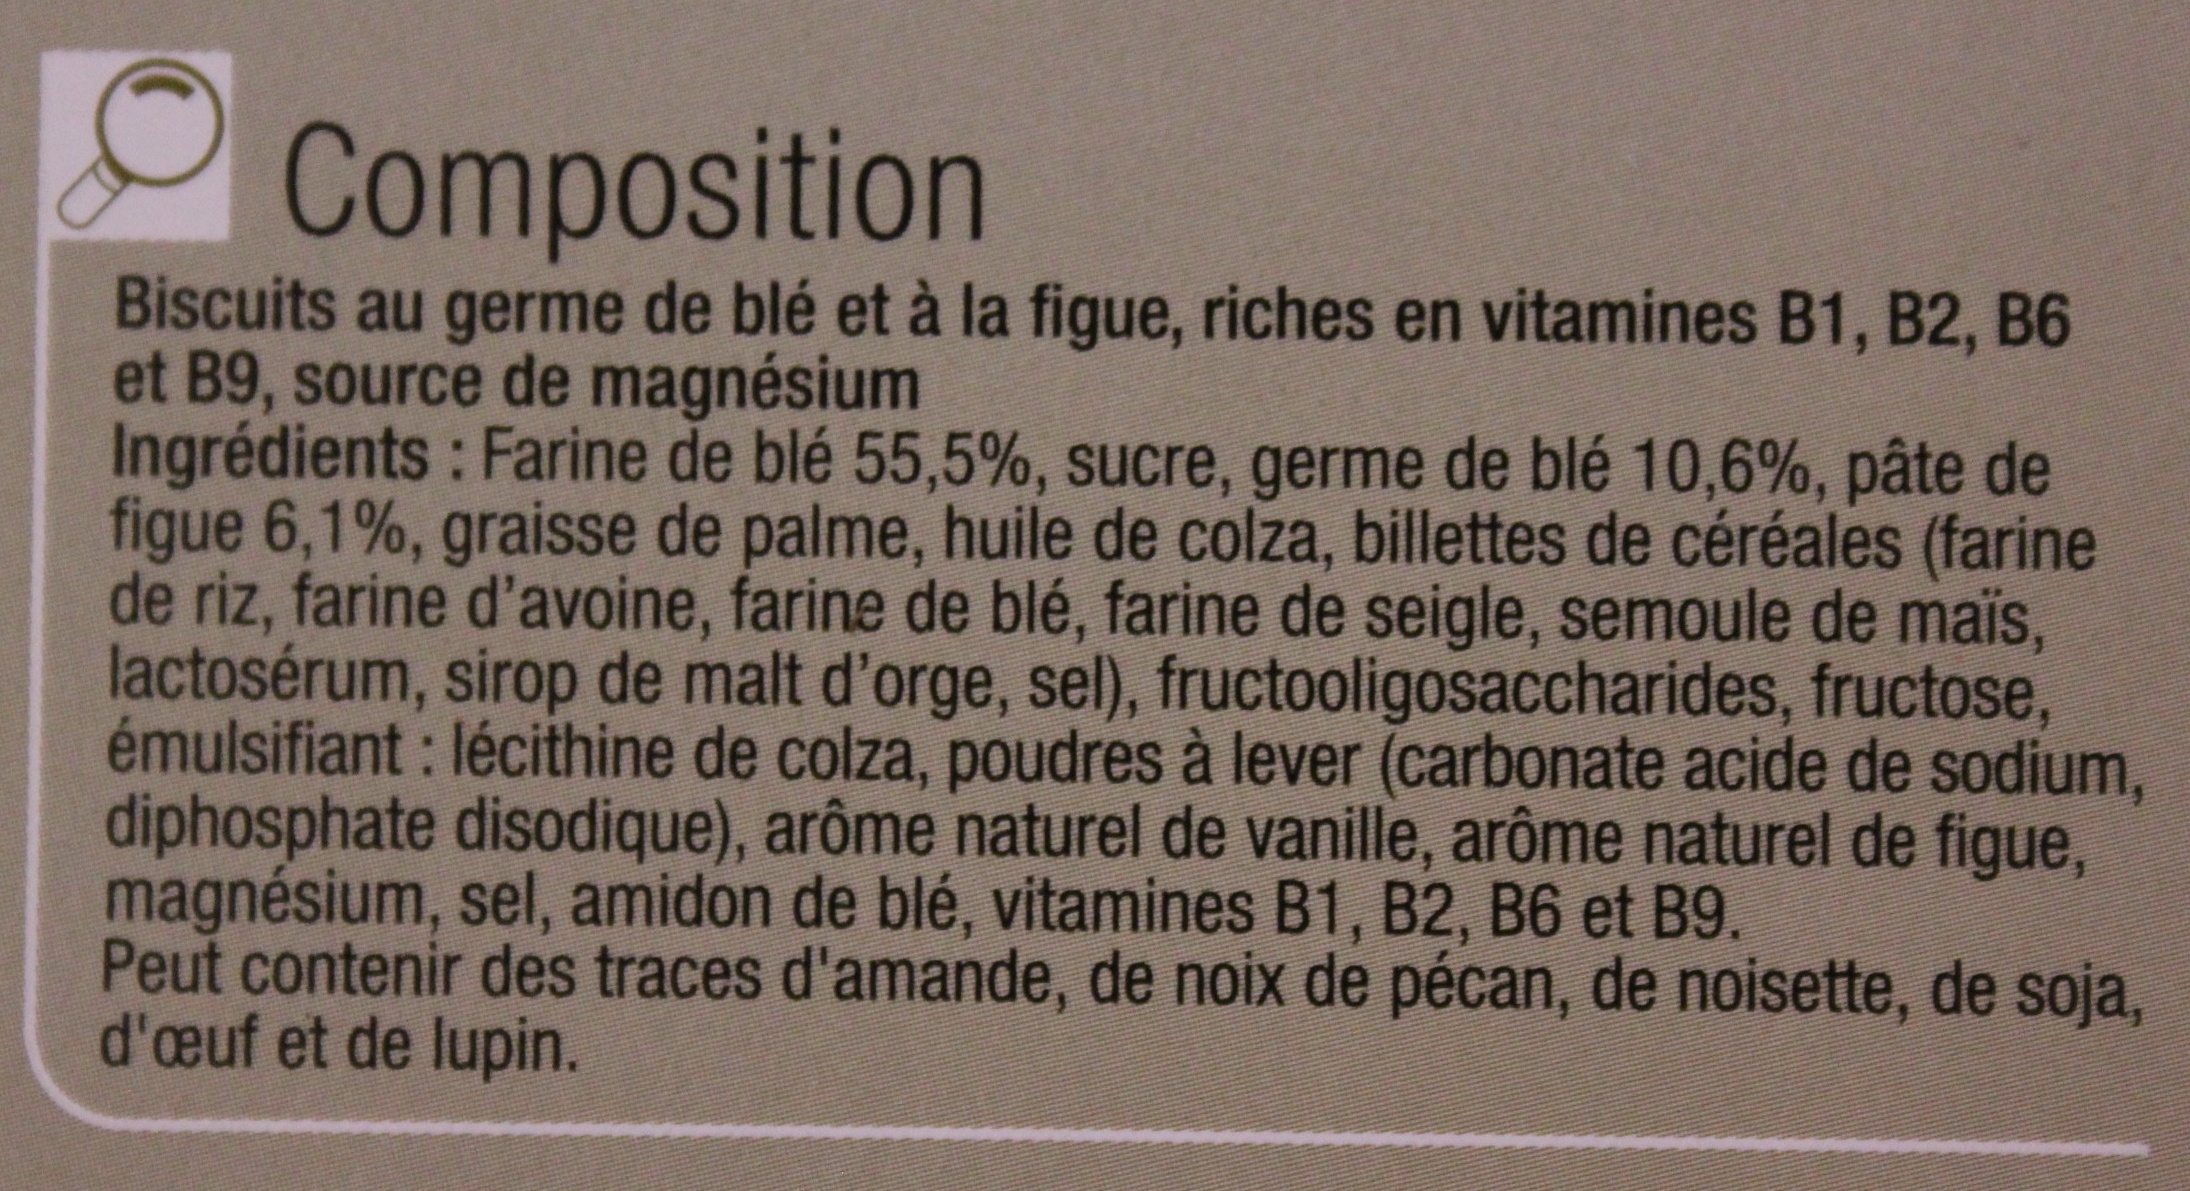 Biscuits germe de blé figue - Ingredients - fr